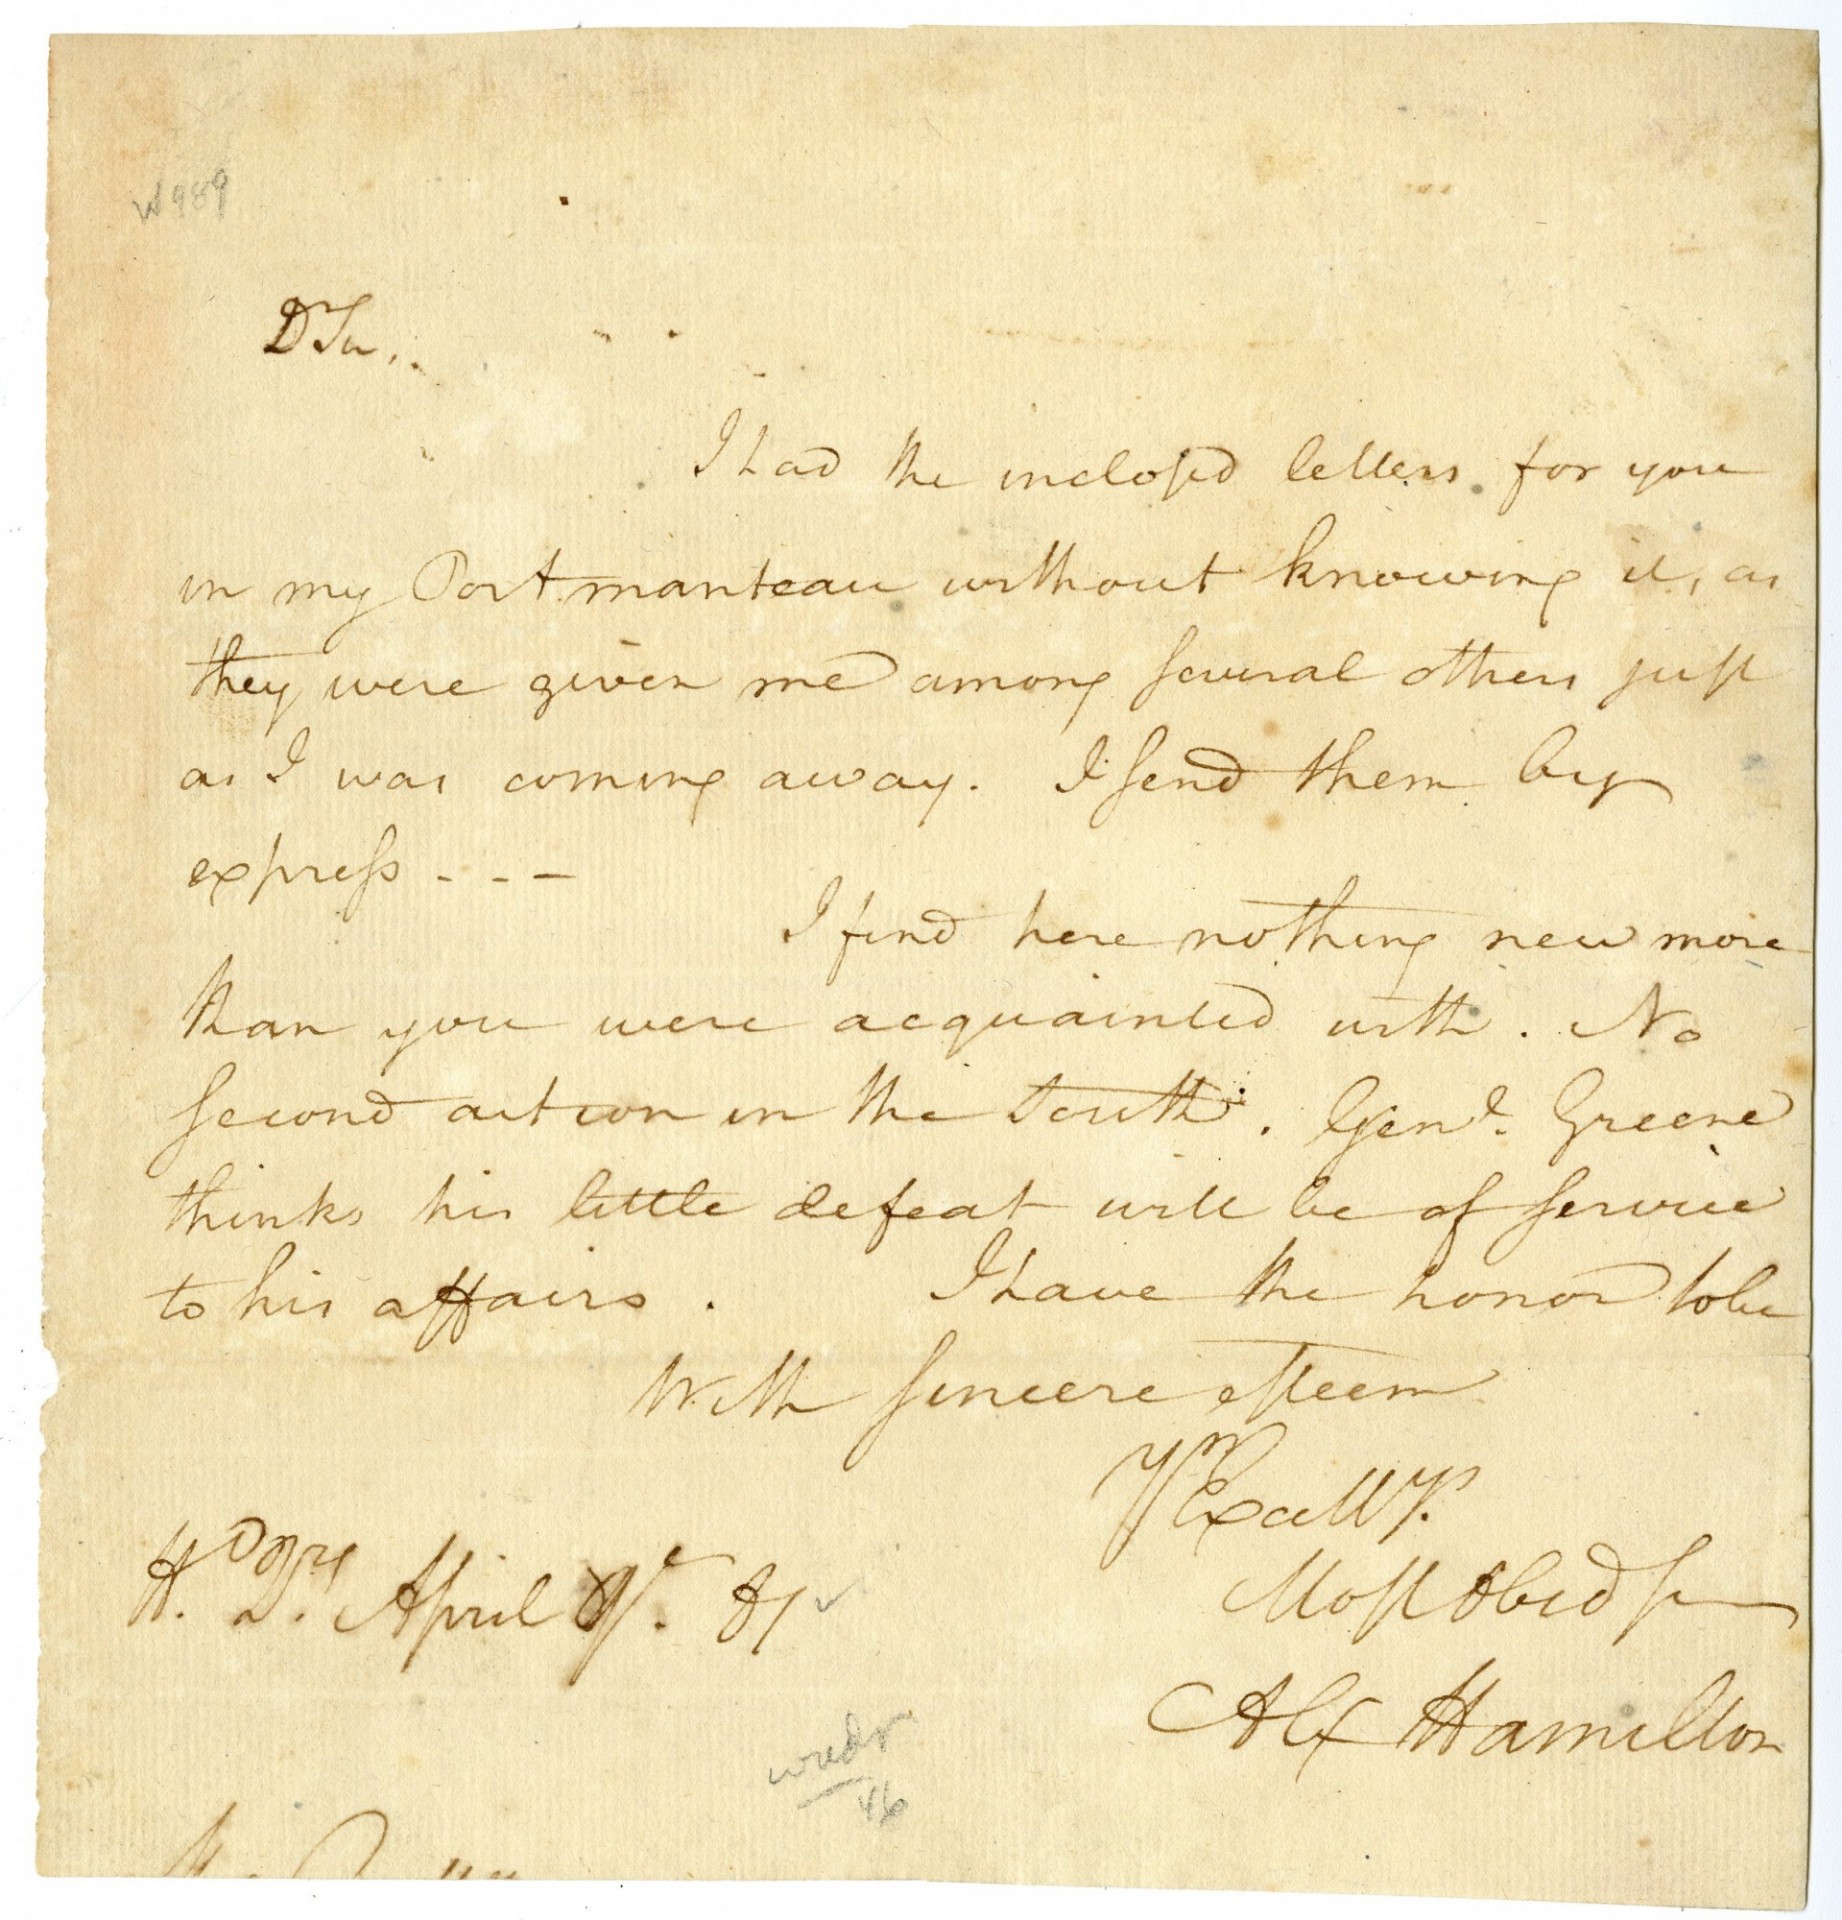 A handwritten letter